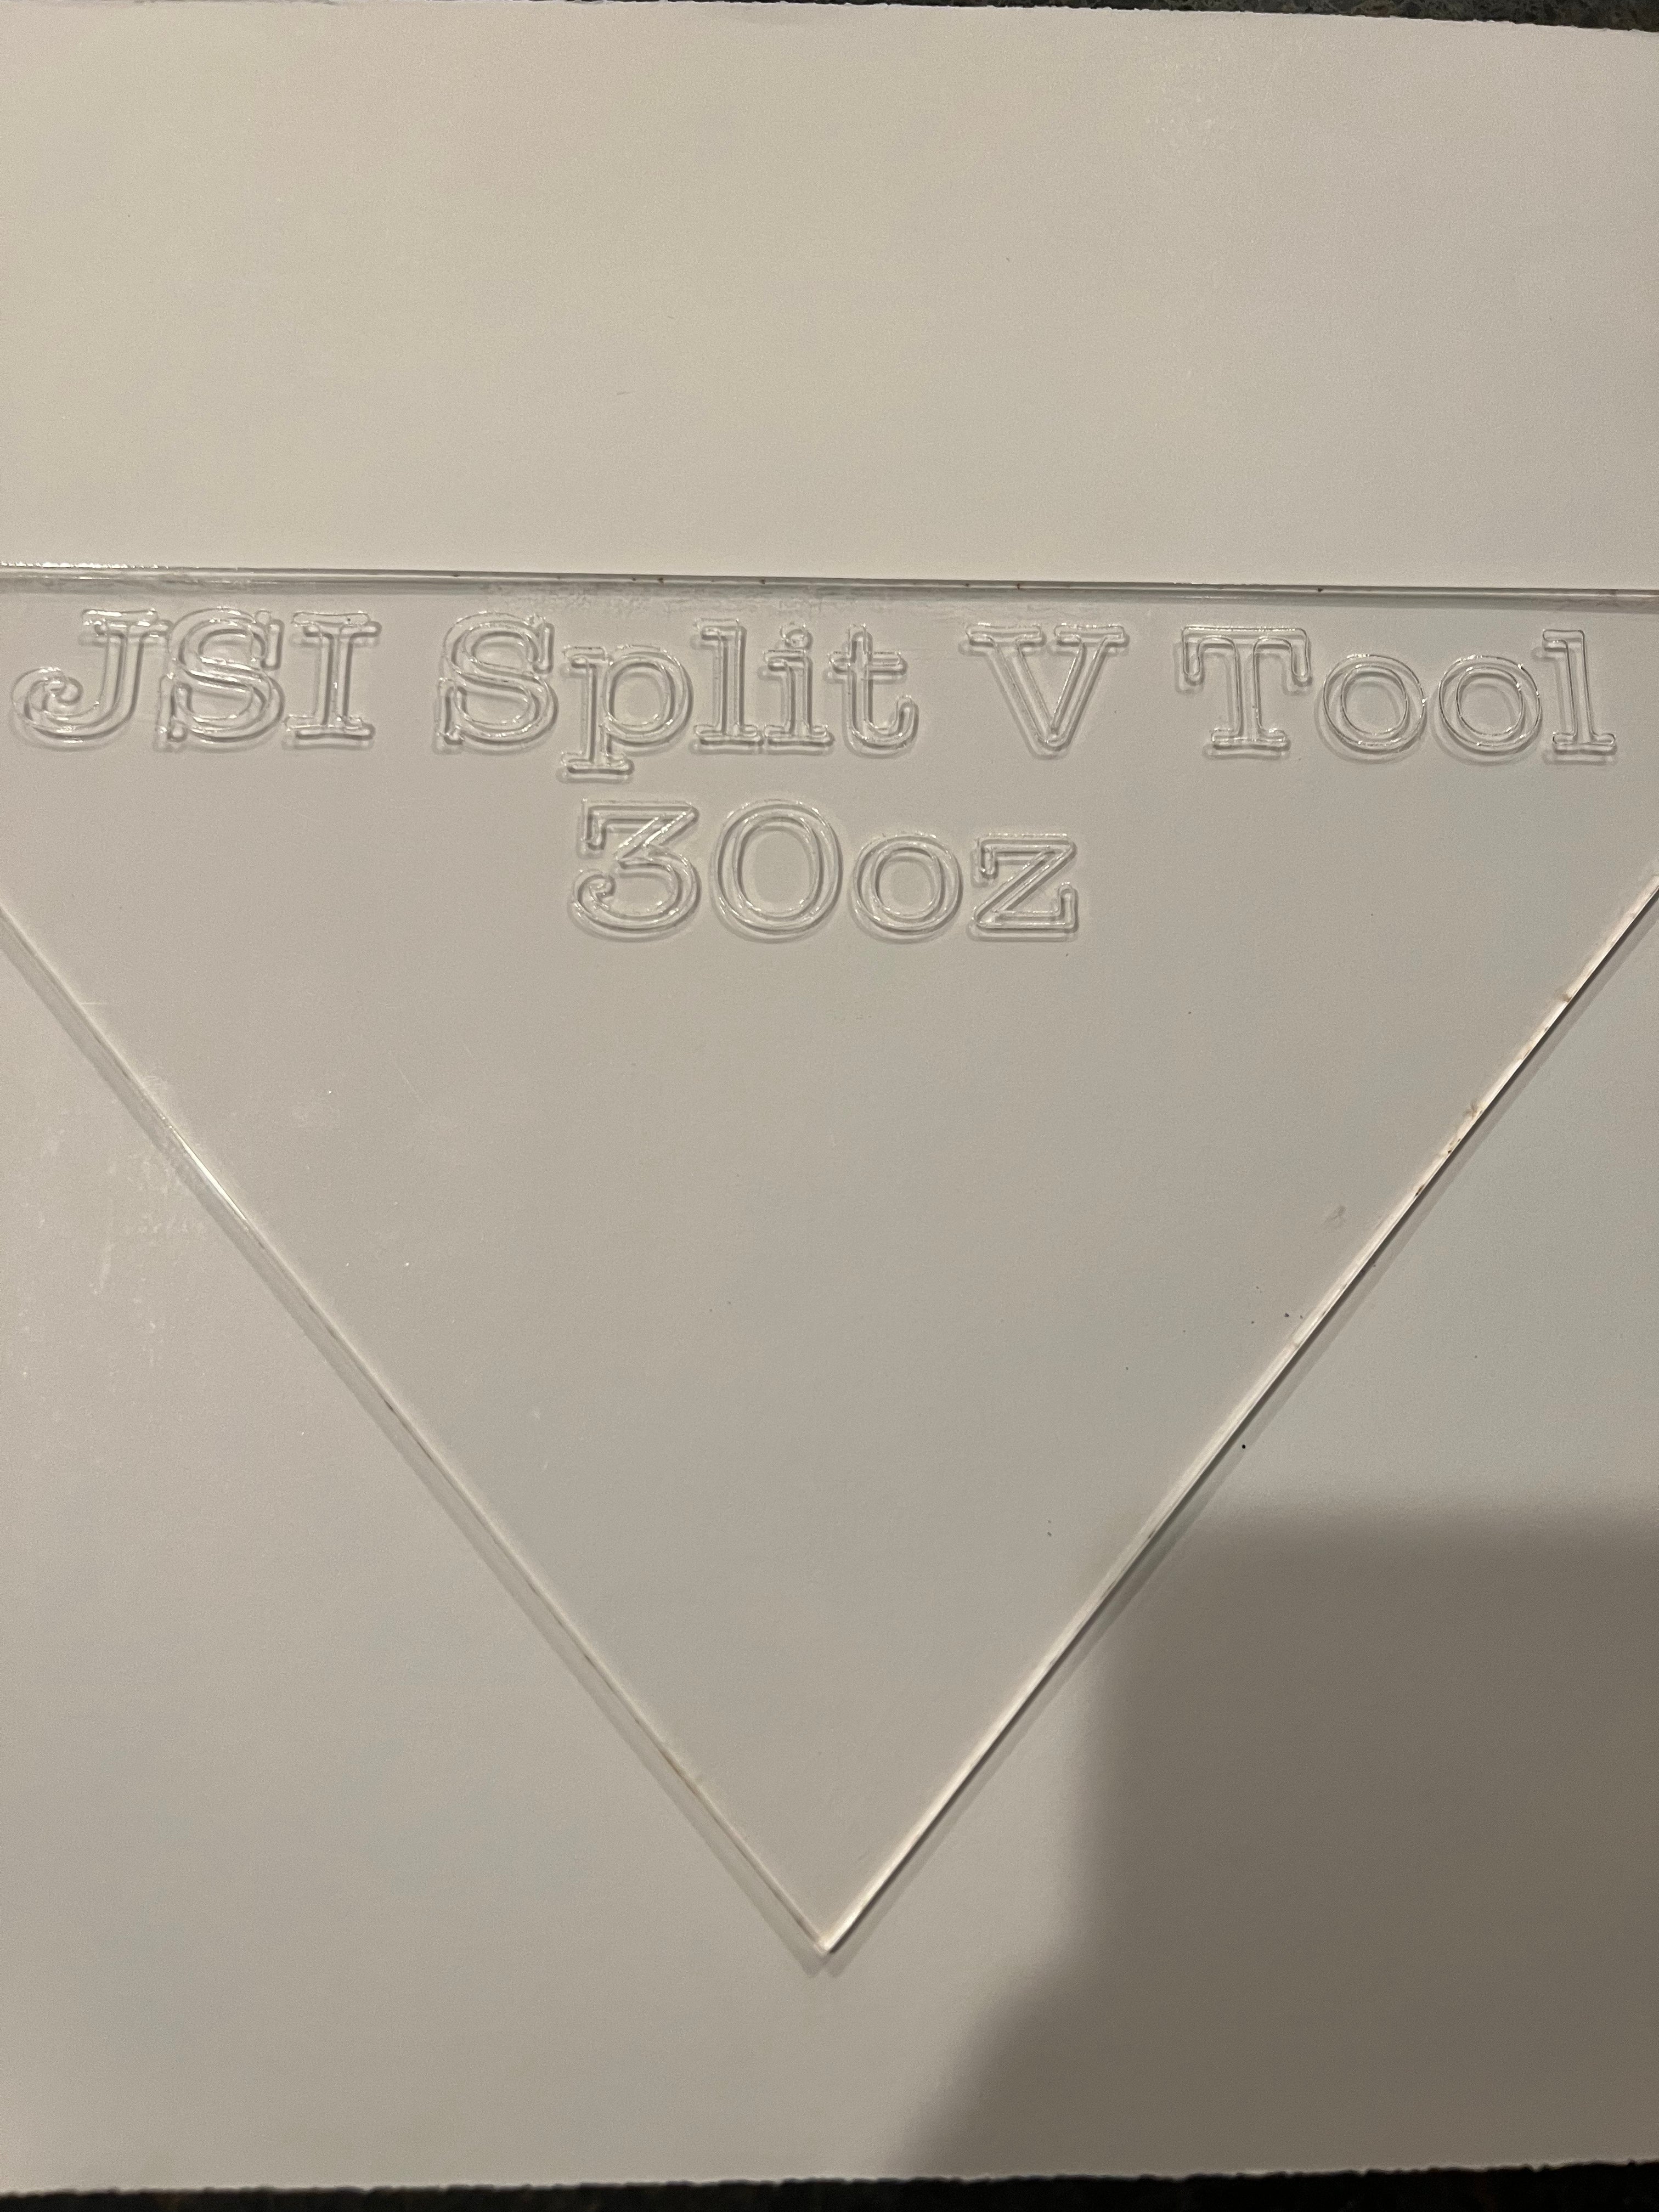 JSI Split V Tool (30oz)